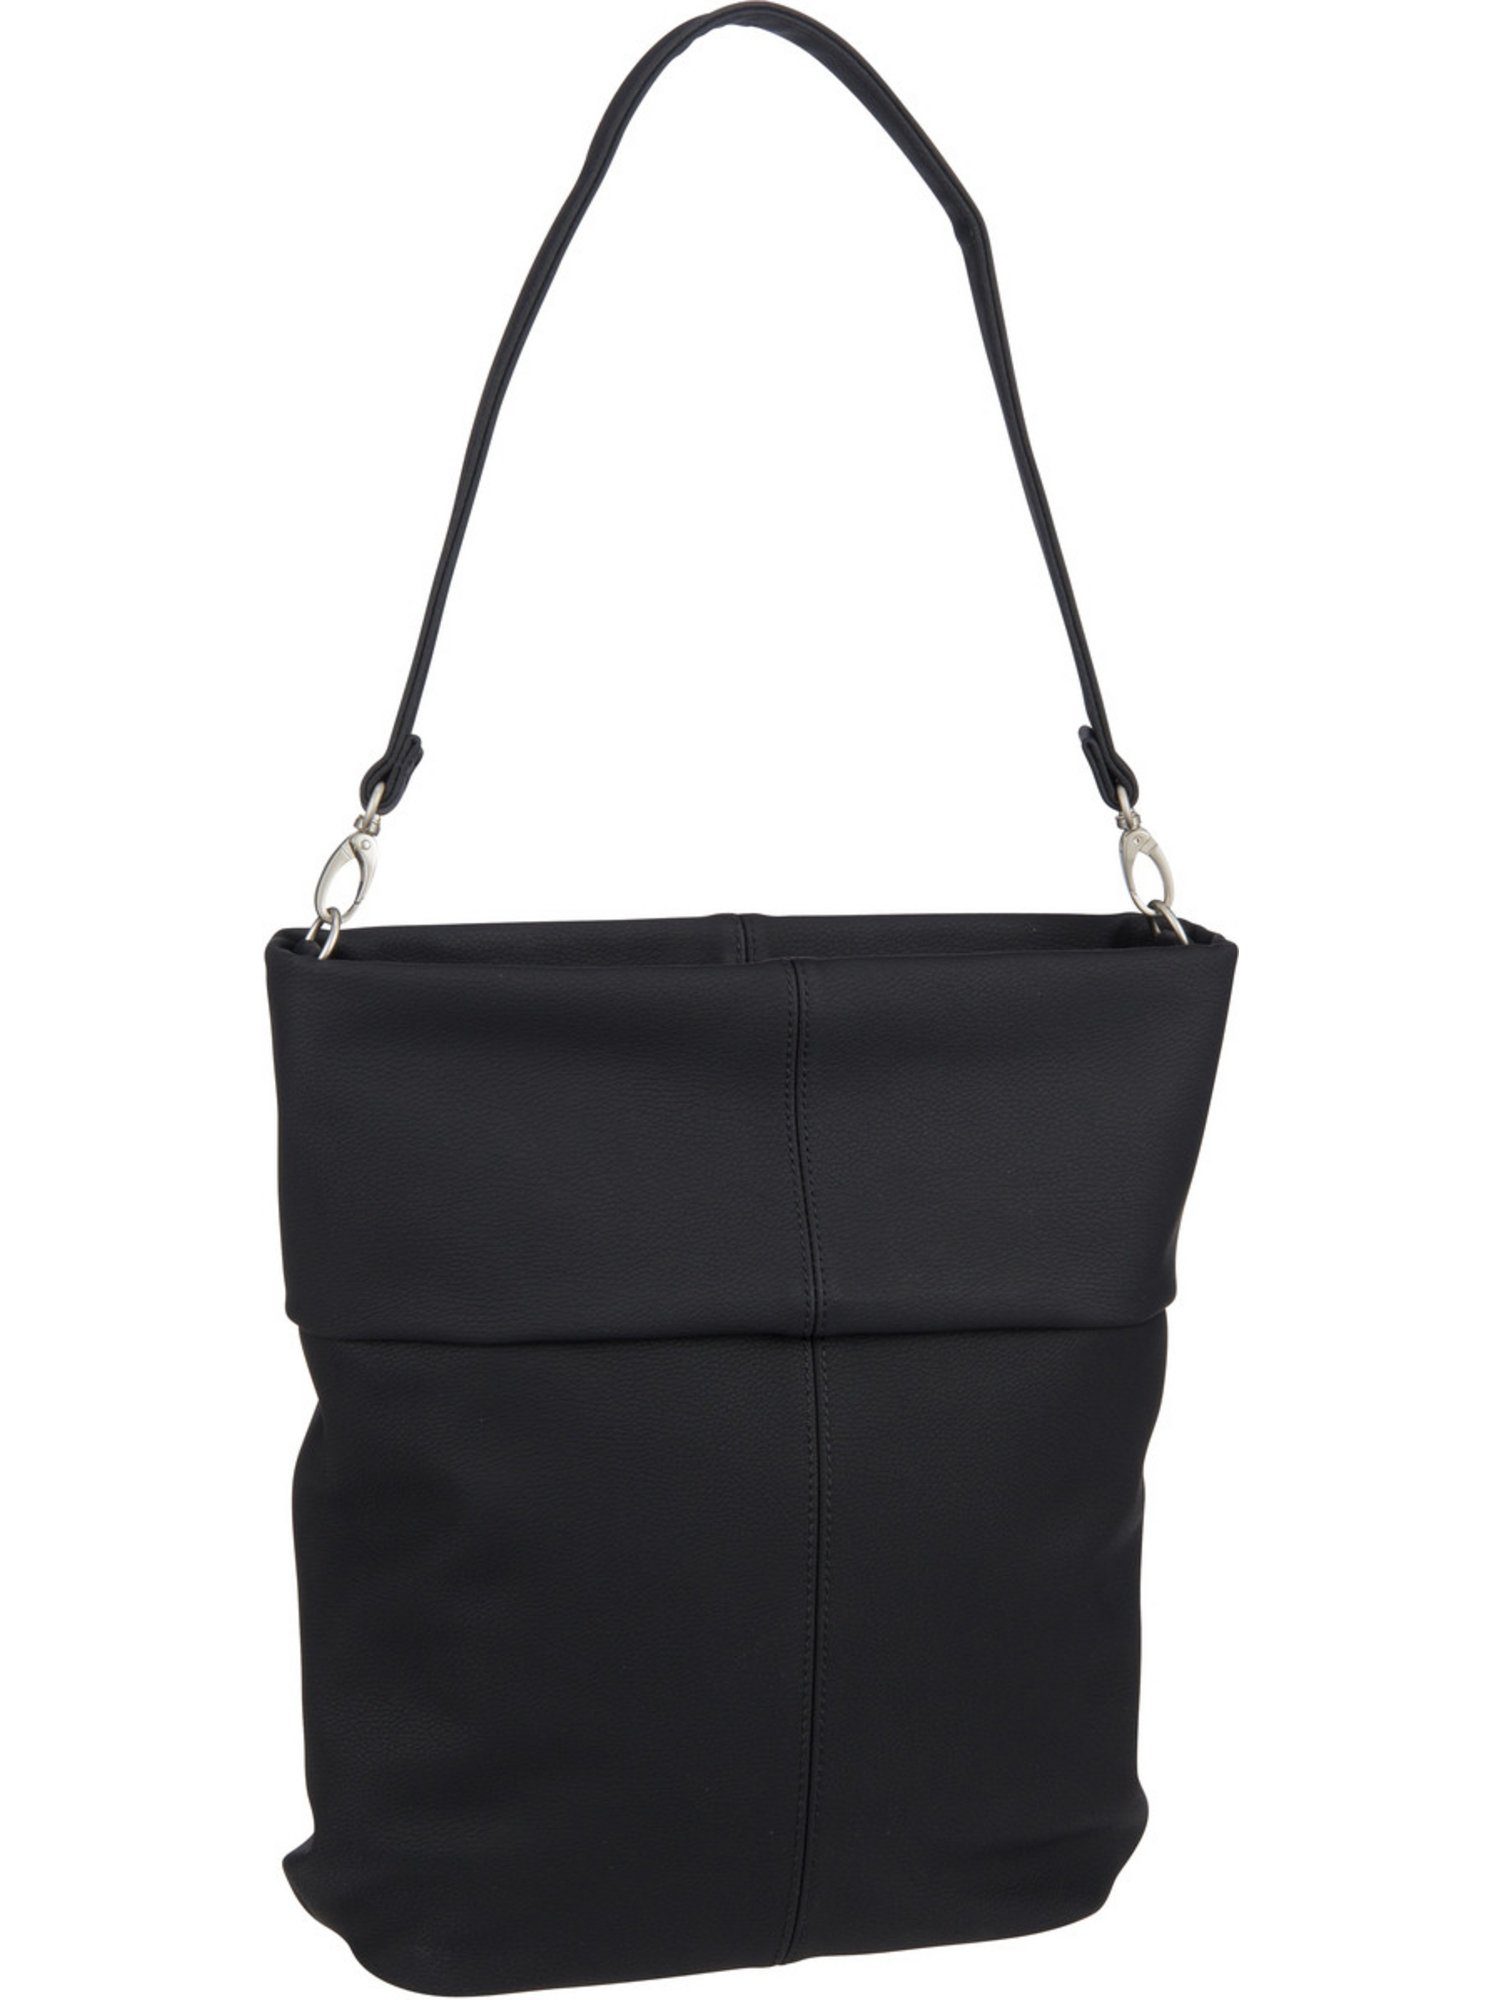 Bag Nubuk/Black Handtasche Hobo Mademoiselle M12, Zwei